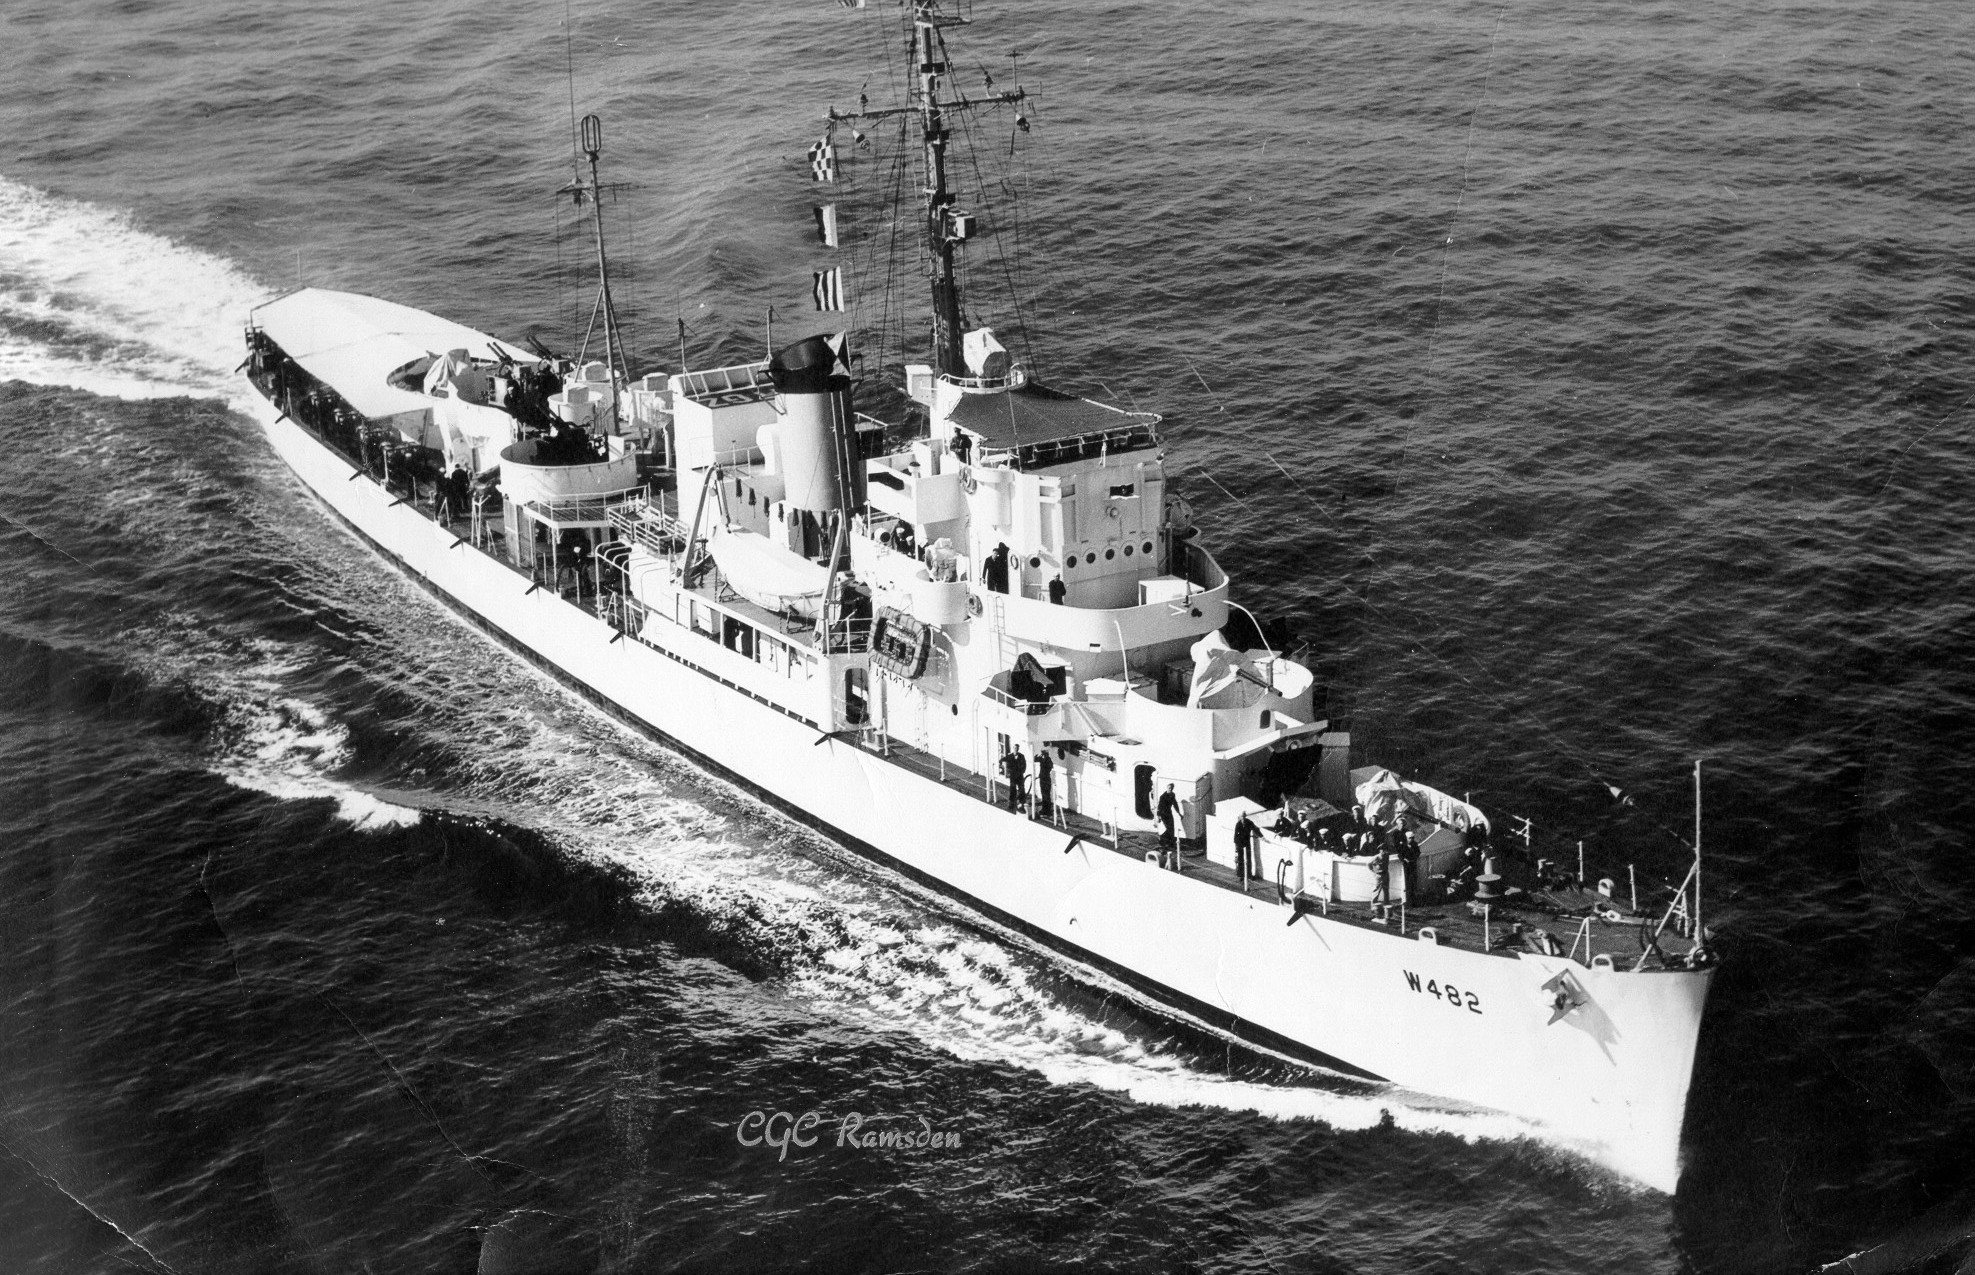 USCGC Ramsden